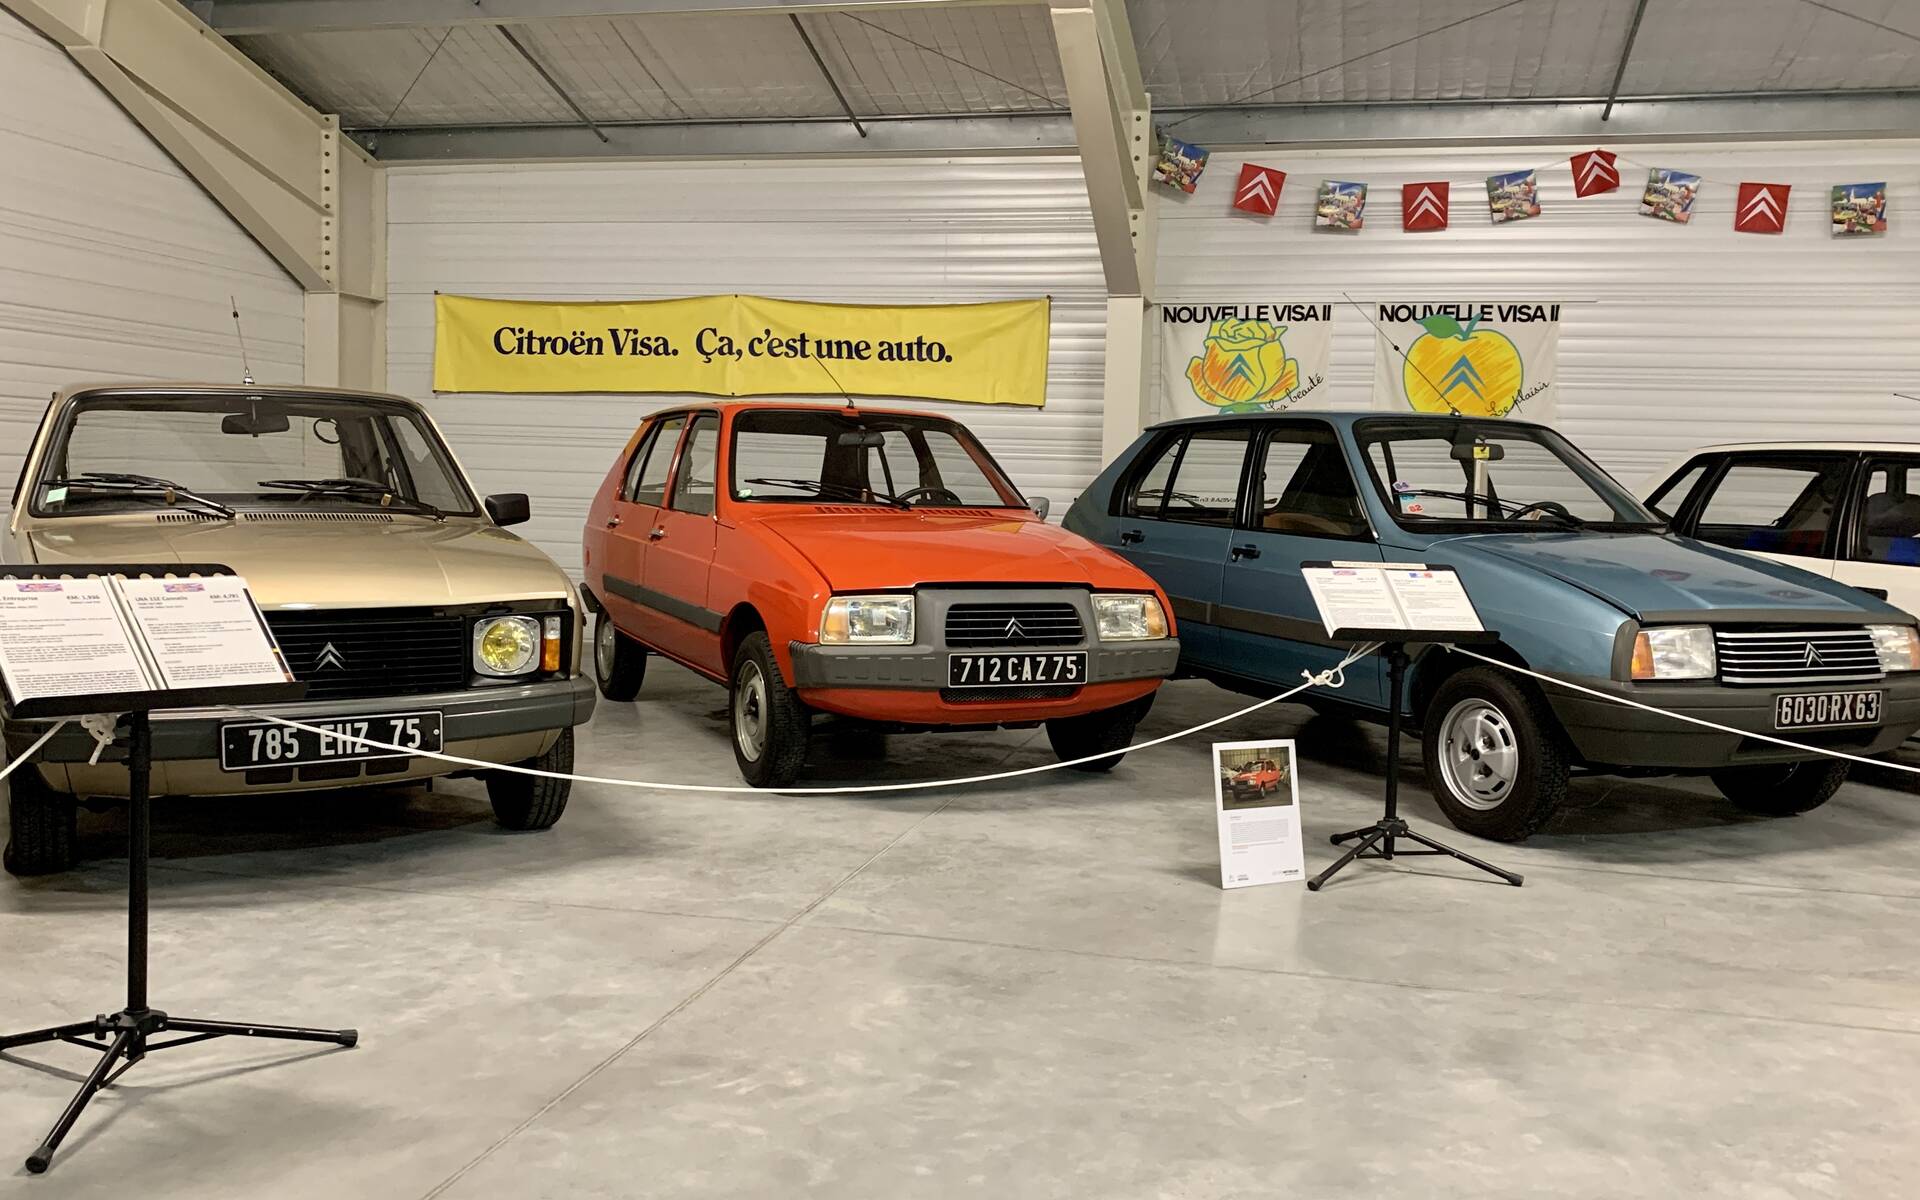 32 - Photos: plus de 100 Citroën d'exception réunies dans un musée en France 543122-photos-plus-de-100-citroen-d-exception-reunies-dans-un-musee-en-france